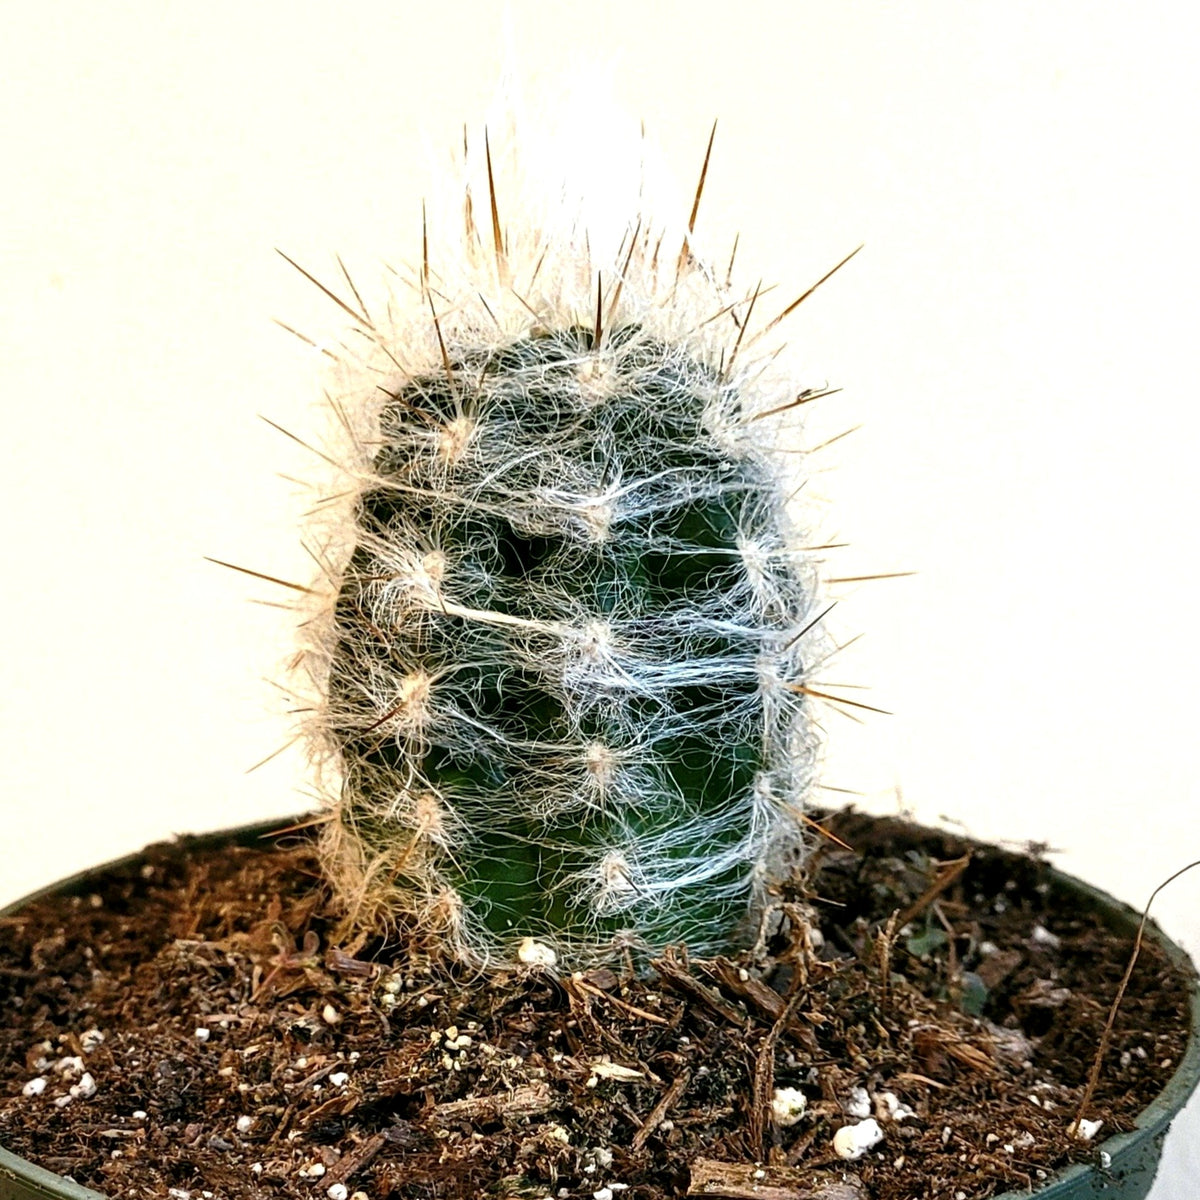 Oreocereus trollii "Old Man" Cactus - Succulents Depot